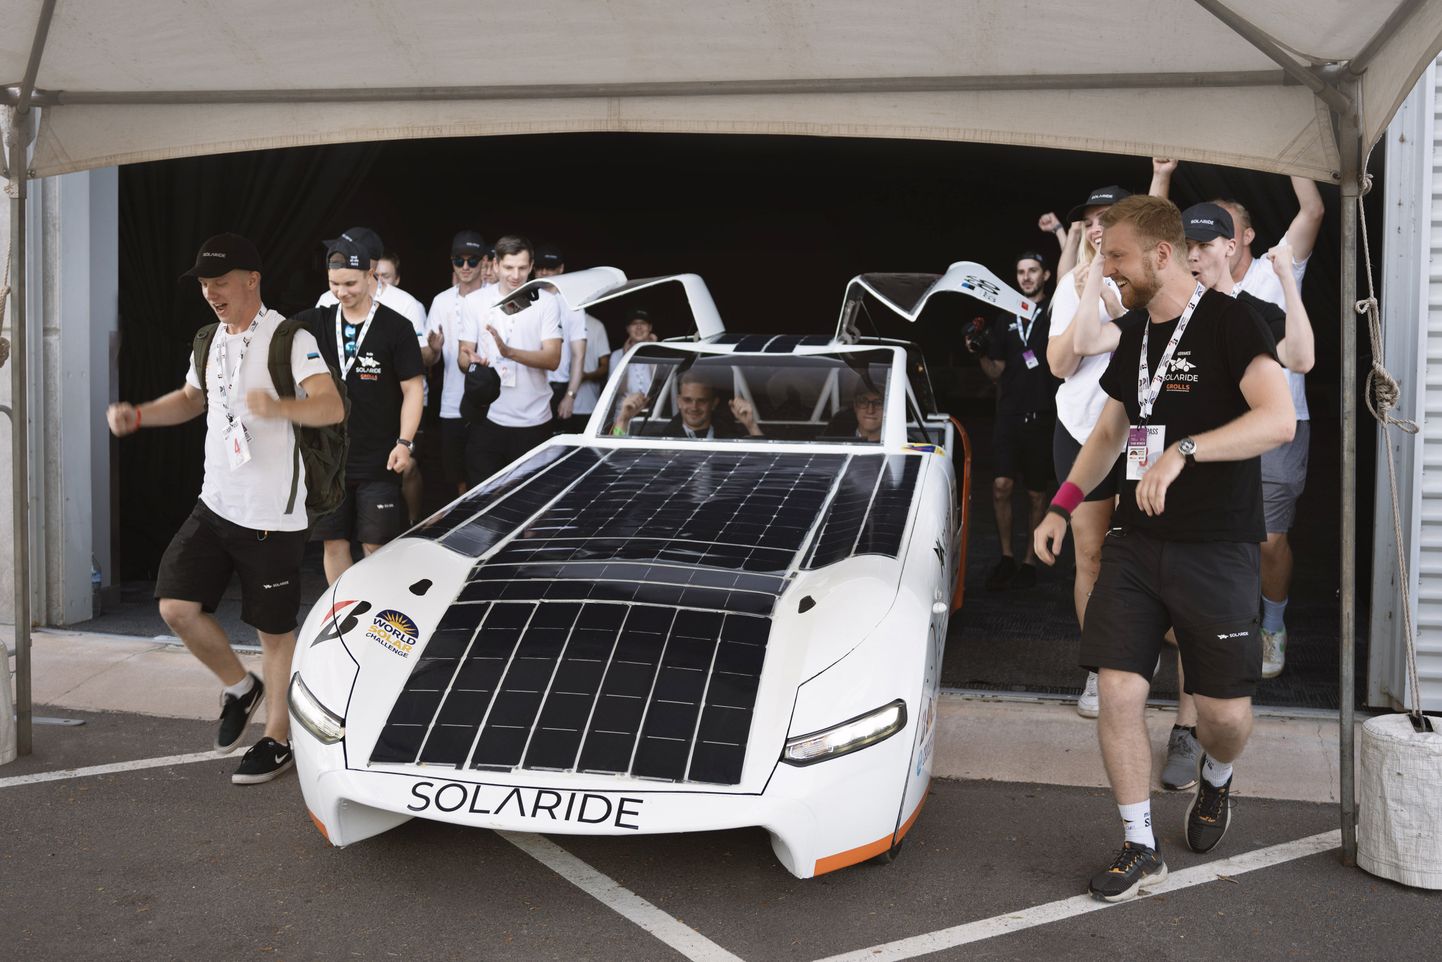 Päikeseautode maailmameistrivõistlustel Austraalias osalev Eesti tudengite sõiduk Solaride ja selle loojad.